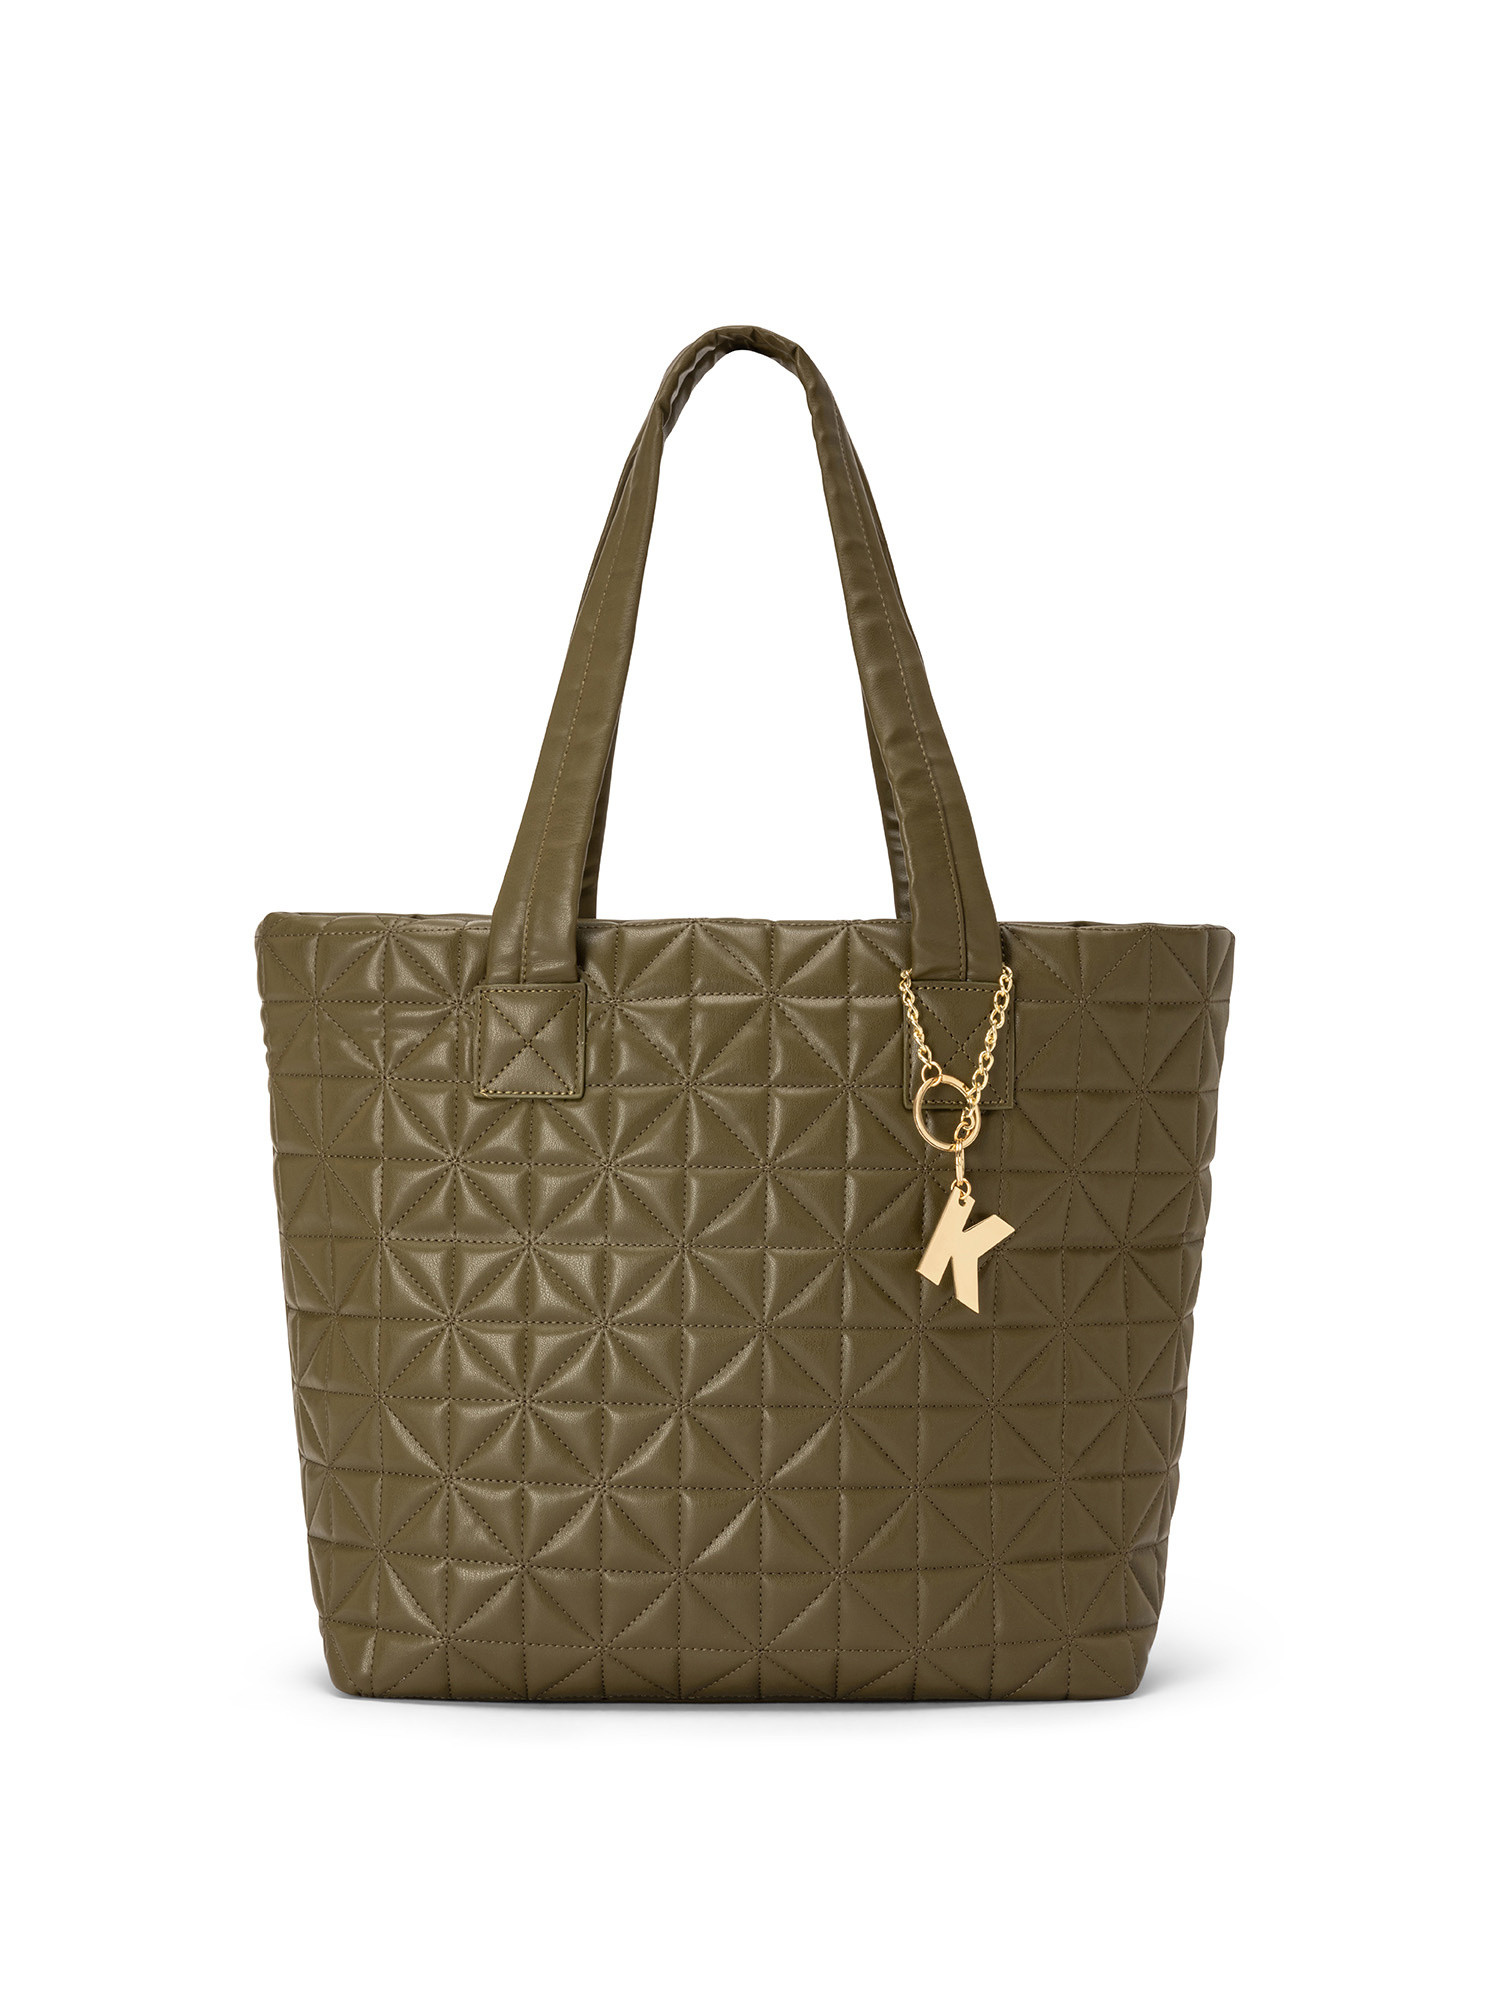 Koan - Shopping bag with motif, Green, large image number 0